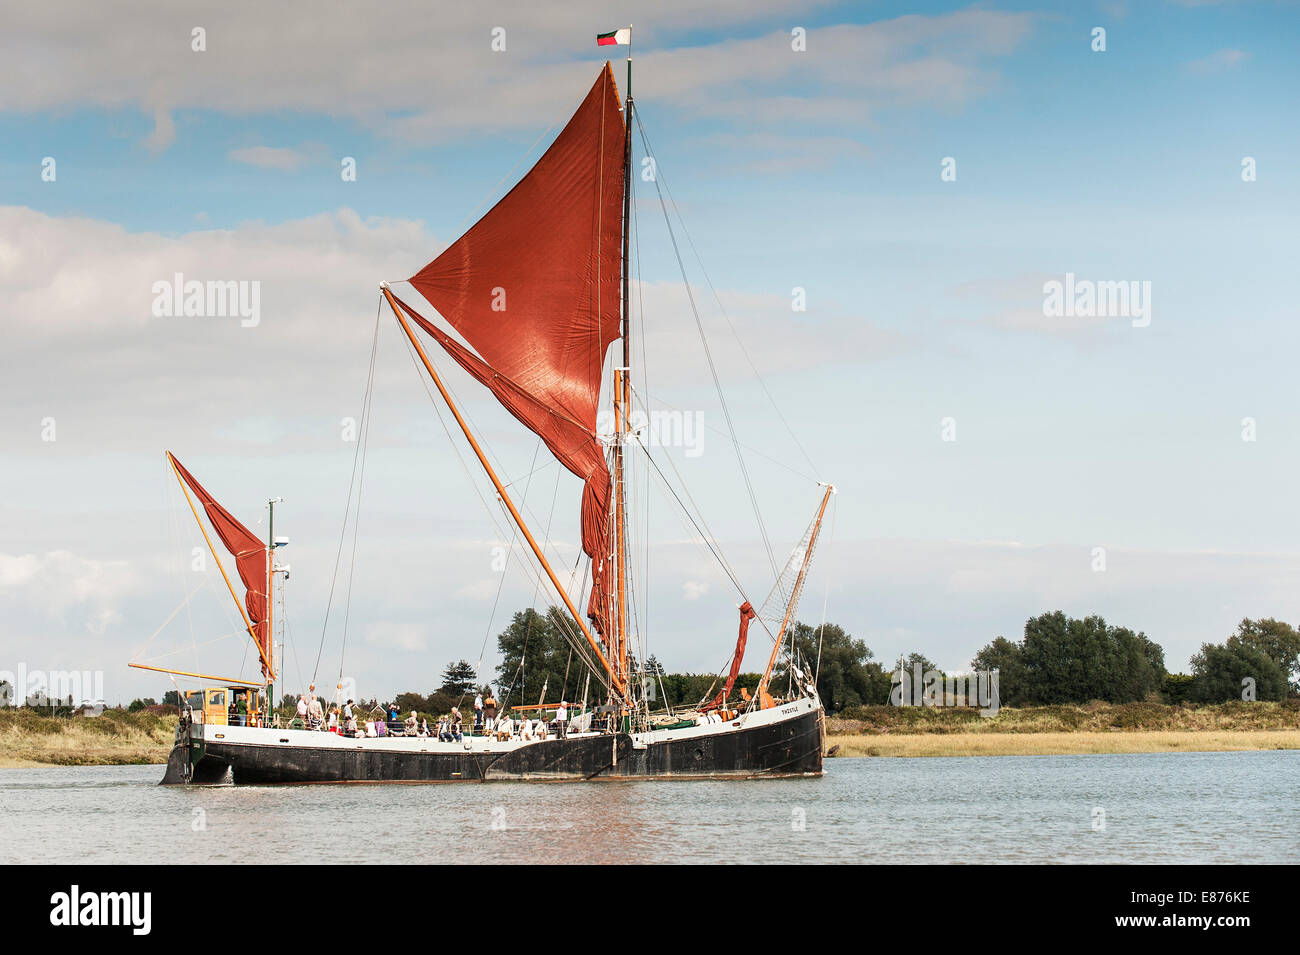 Das Segeln Schiff; Distel "am Fluss Blackwater in Essex. Stockfoto